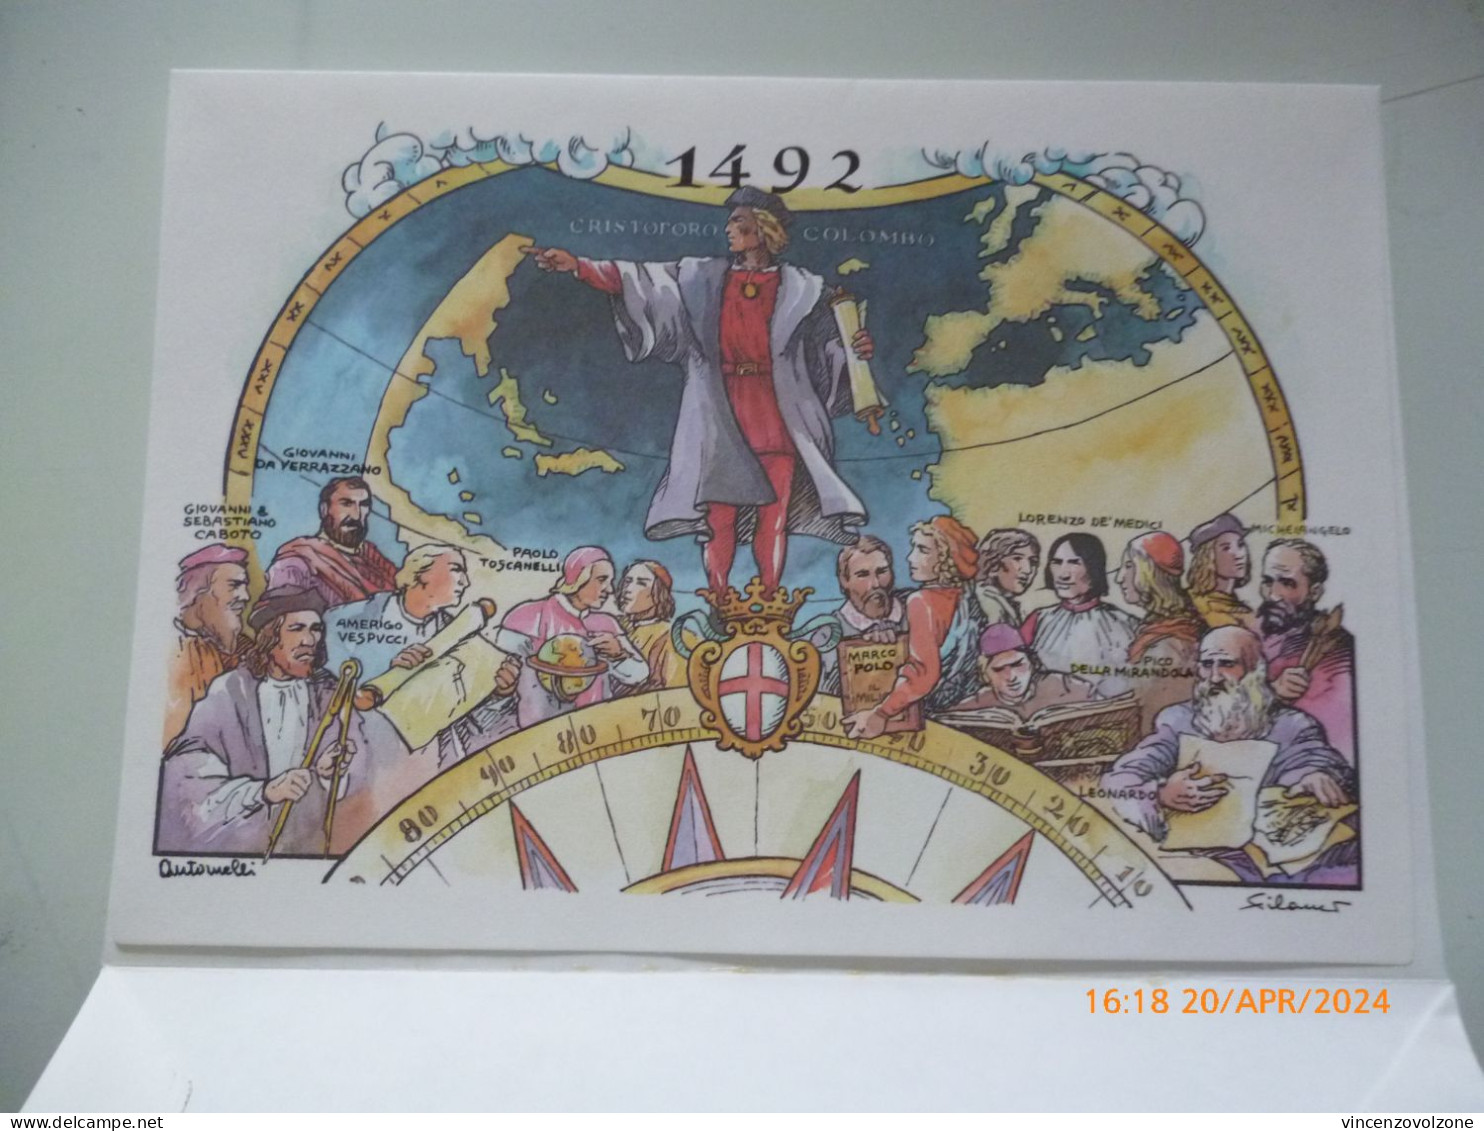 Biglietto Postale "GENOVA '92 CELEBRAZIONI COLOMBIANE" - 1991-00: Marcofilie